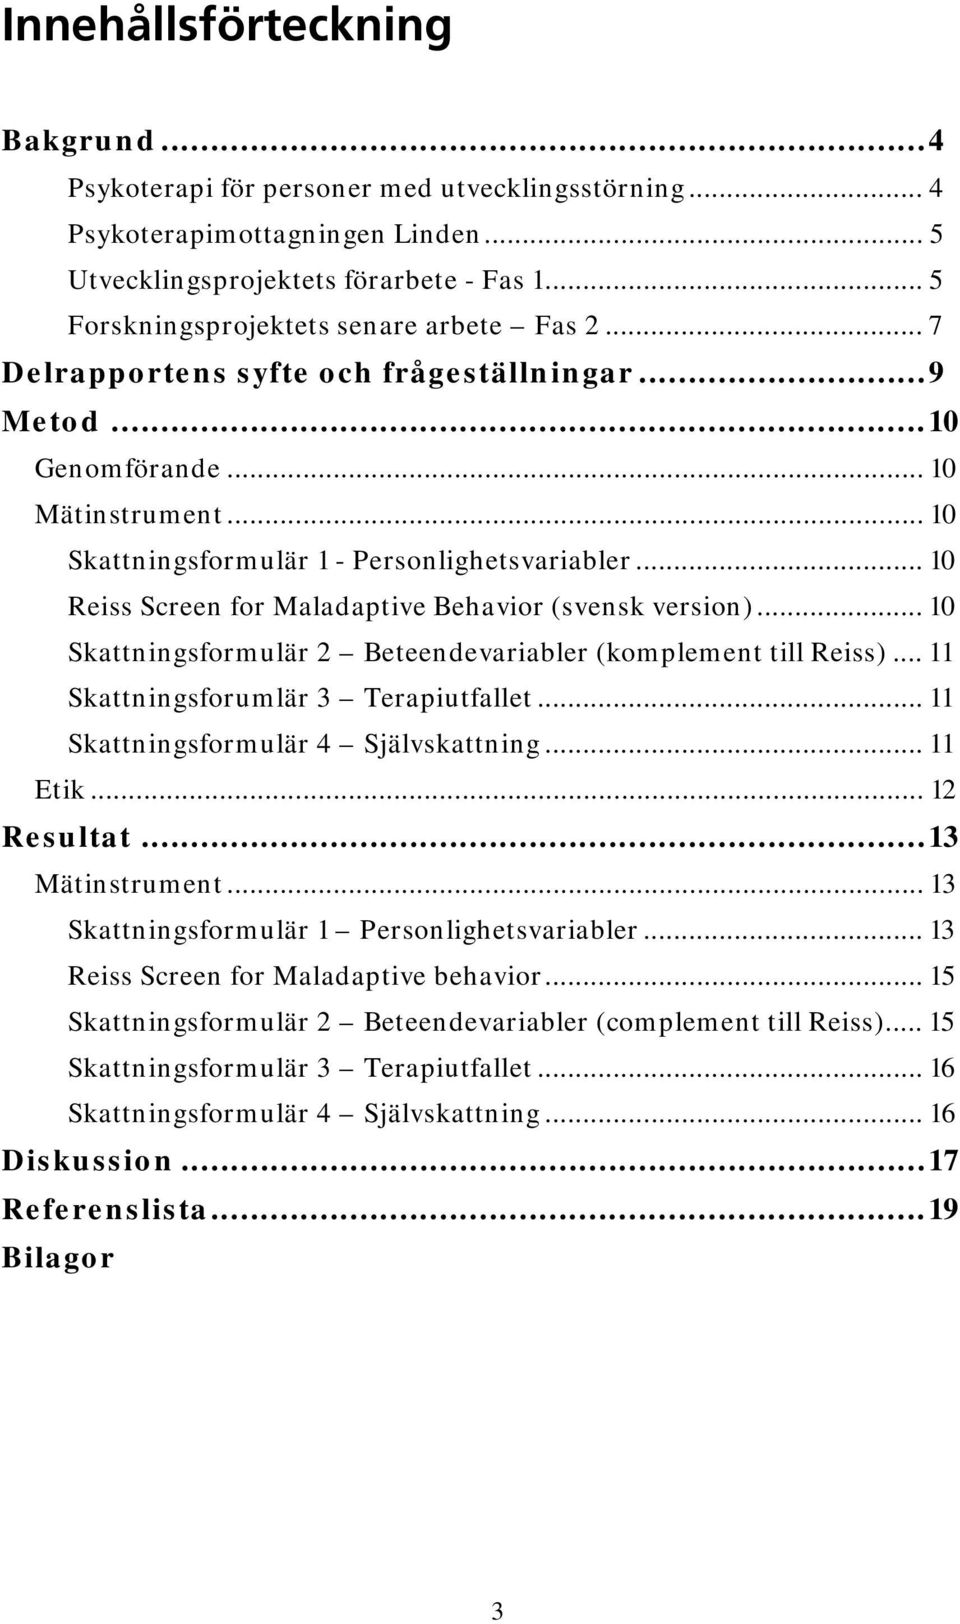 .. 10 Reiss Screen for Maladaptive Behavior (svensk version)... 10 Skattningsformulär 2 Beteendevariabler (komplement till Reiss)... 11 Skattningsforumlär 3 Terapiutfallet.